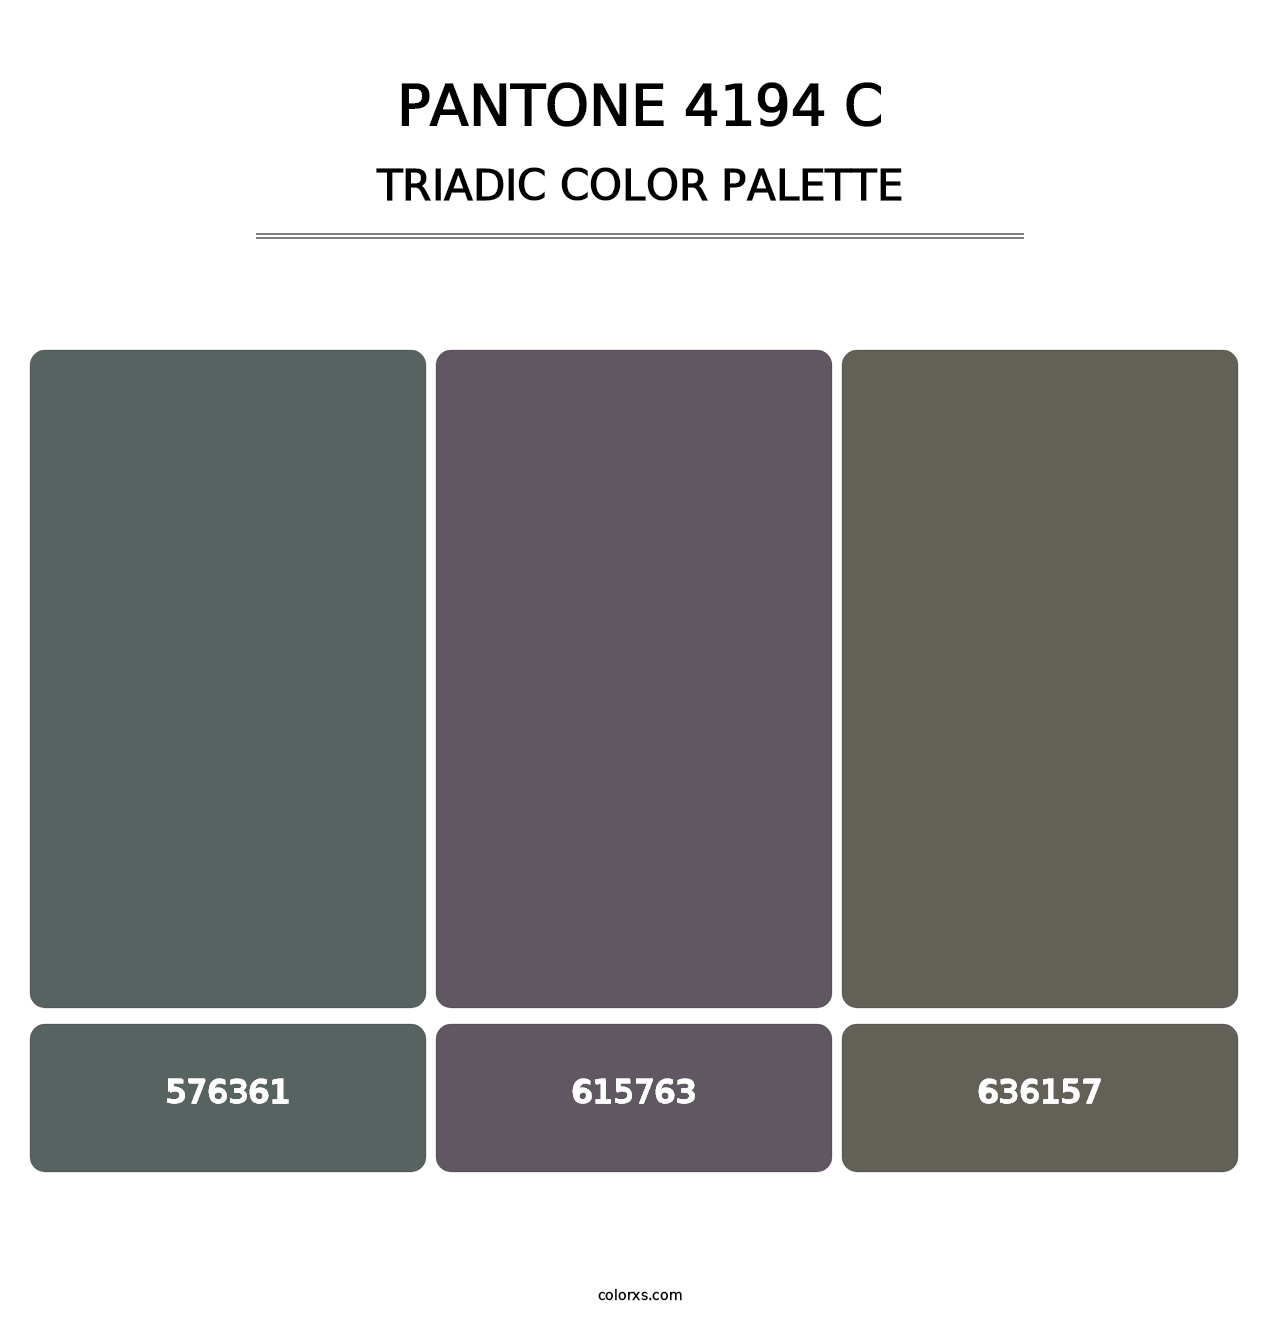 PANTONE 4194 C - Triadic Color Palette